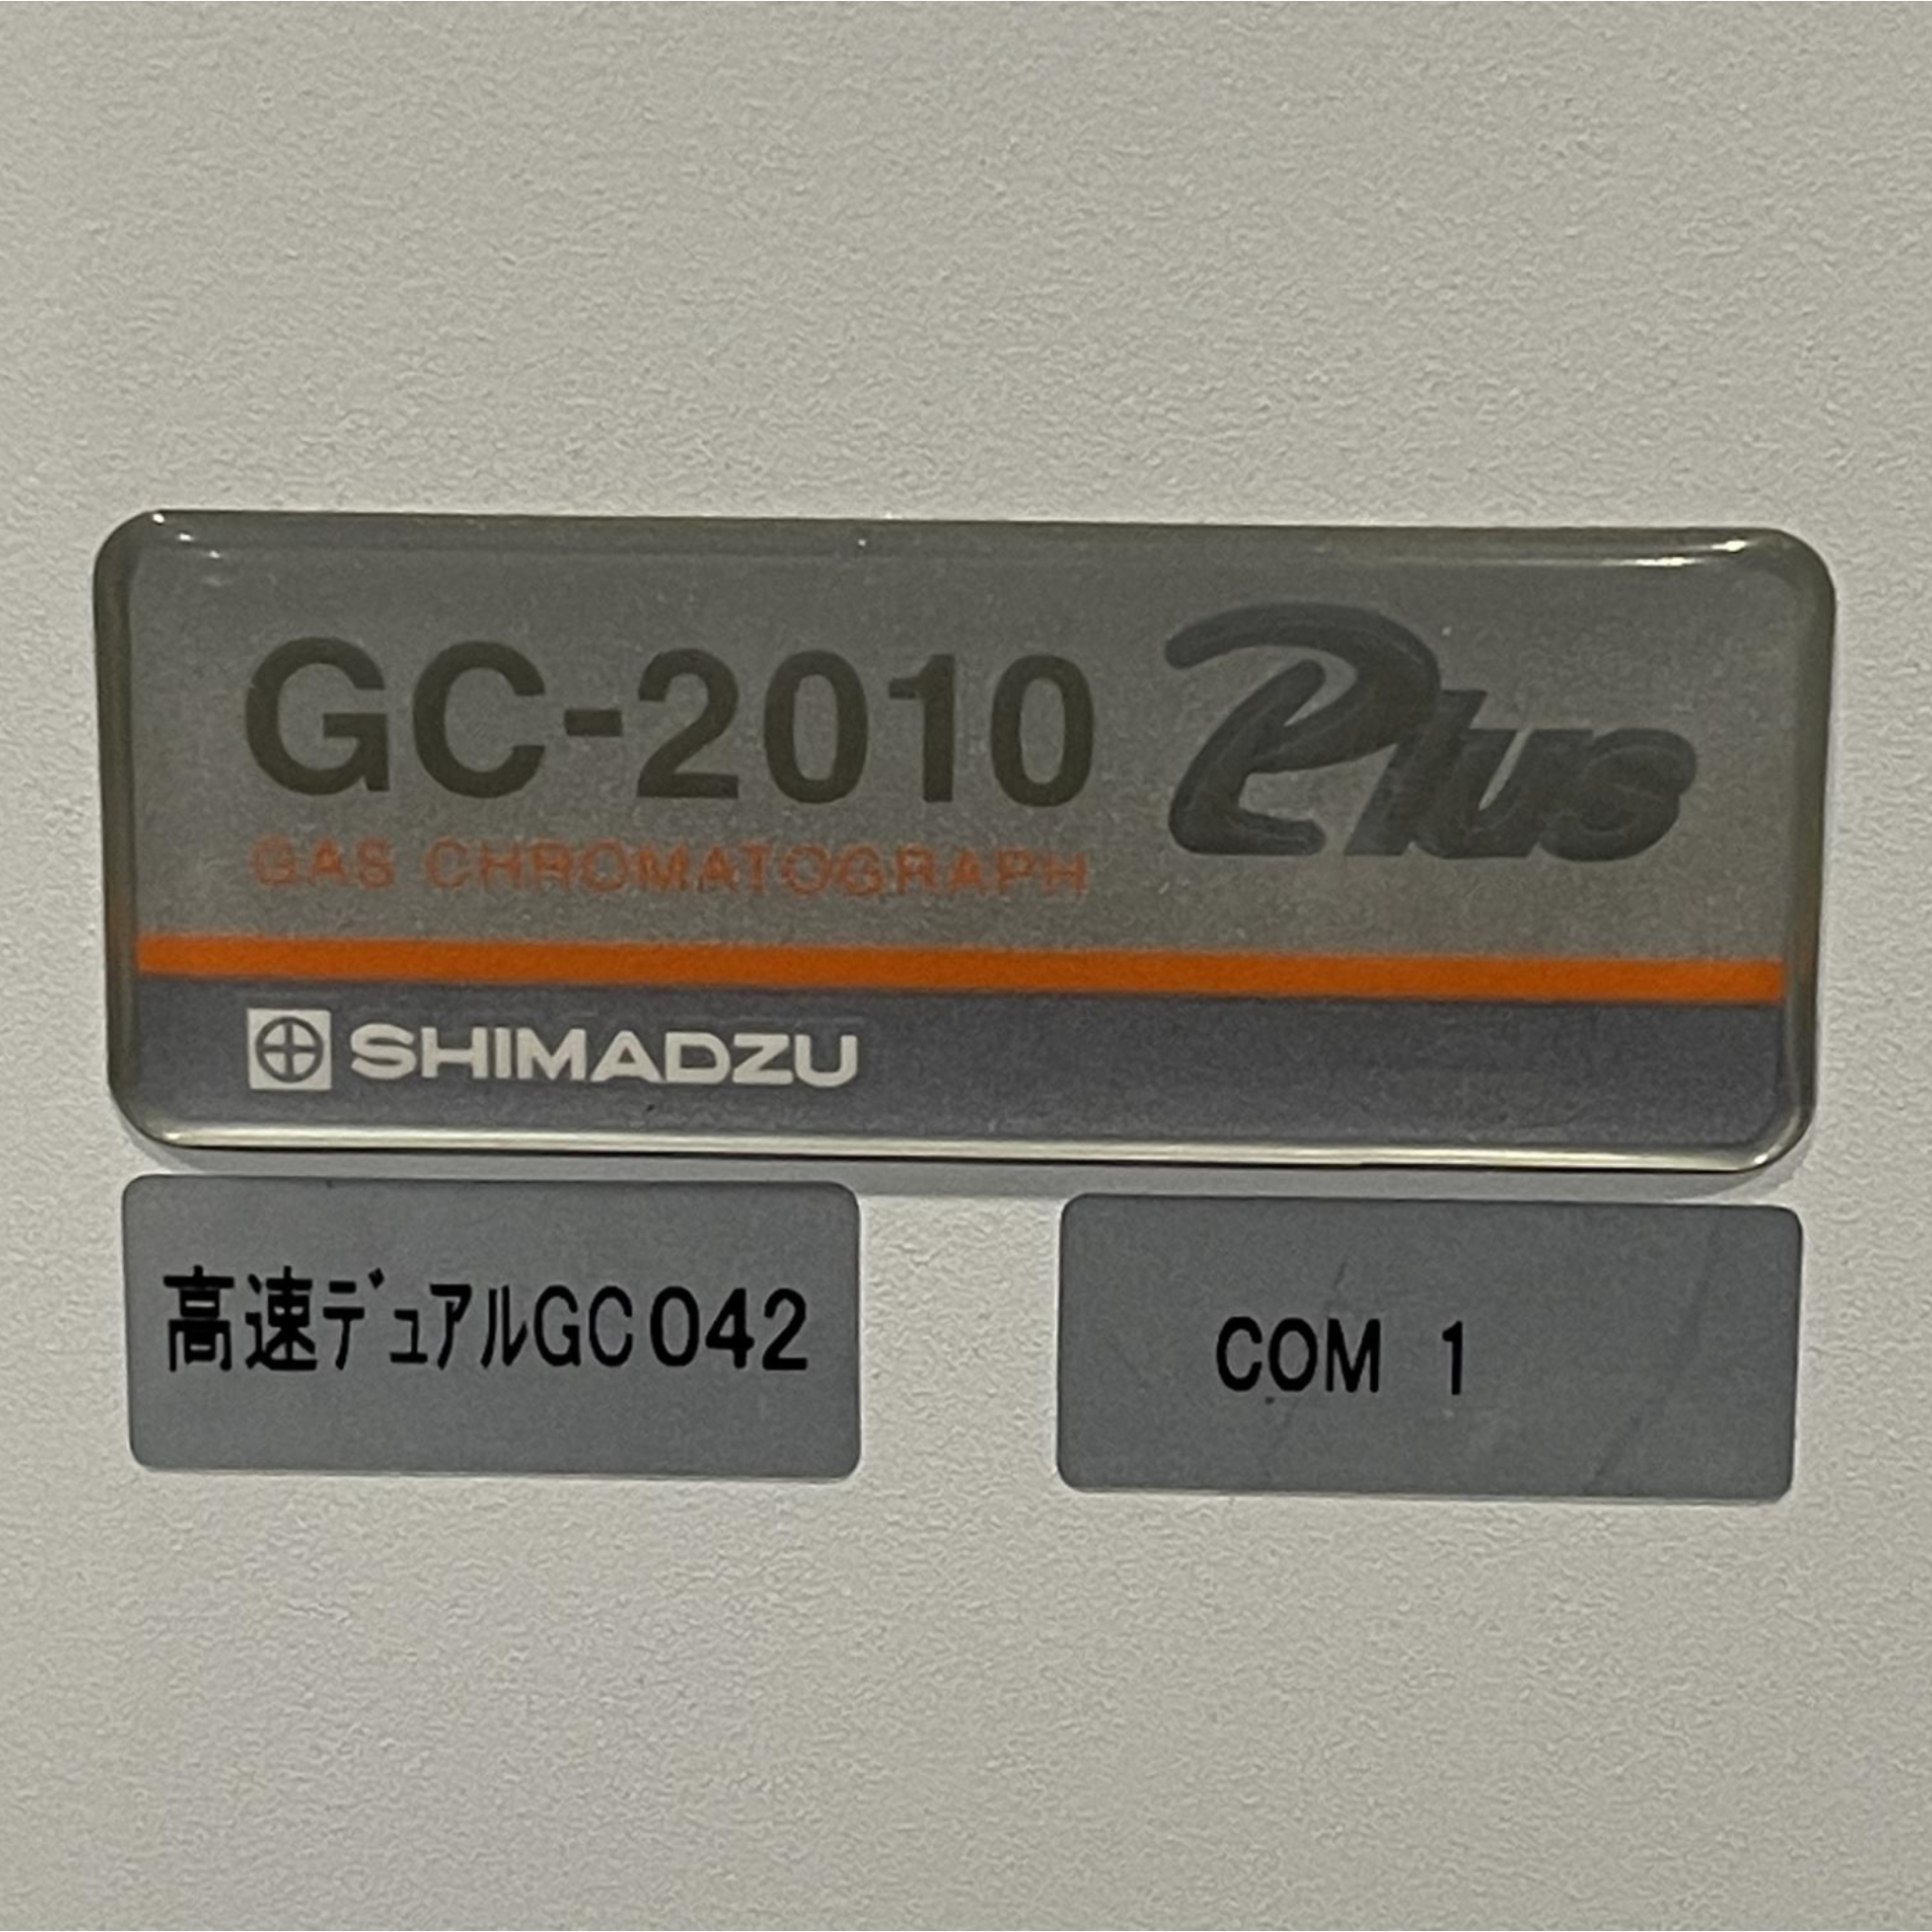 二手岛津 GC-2010Plus气相色谱仪